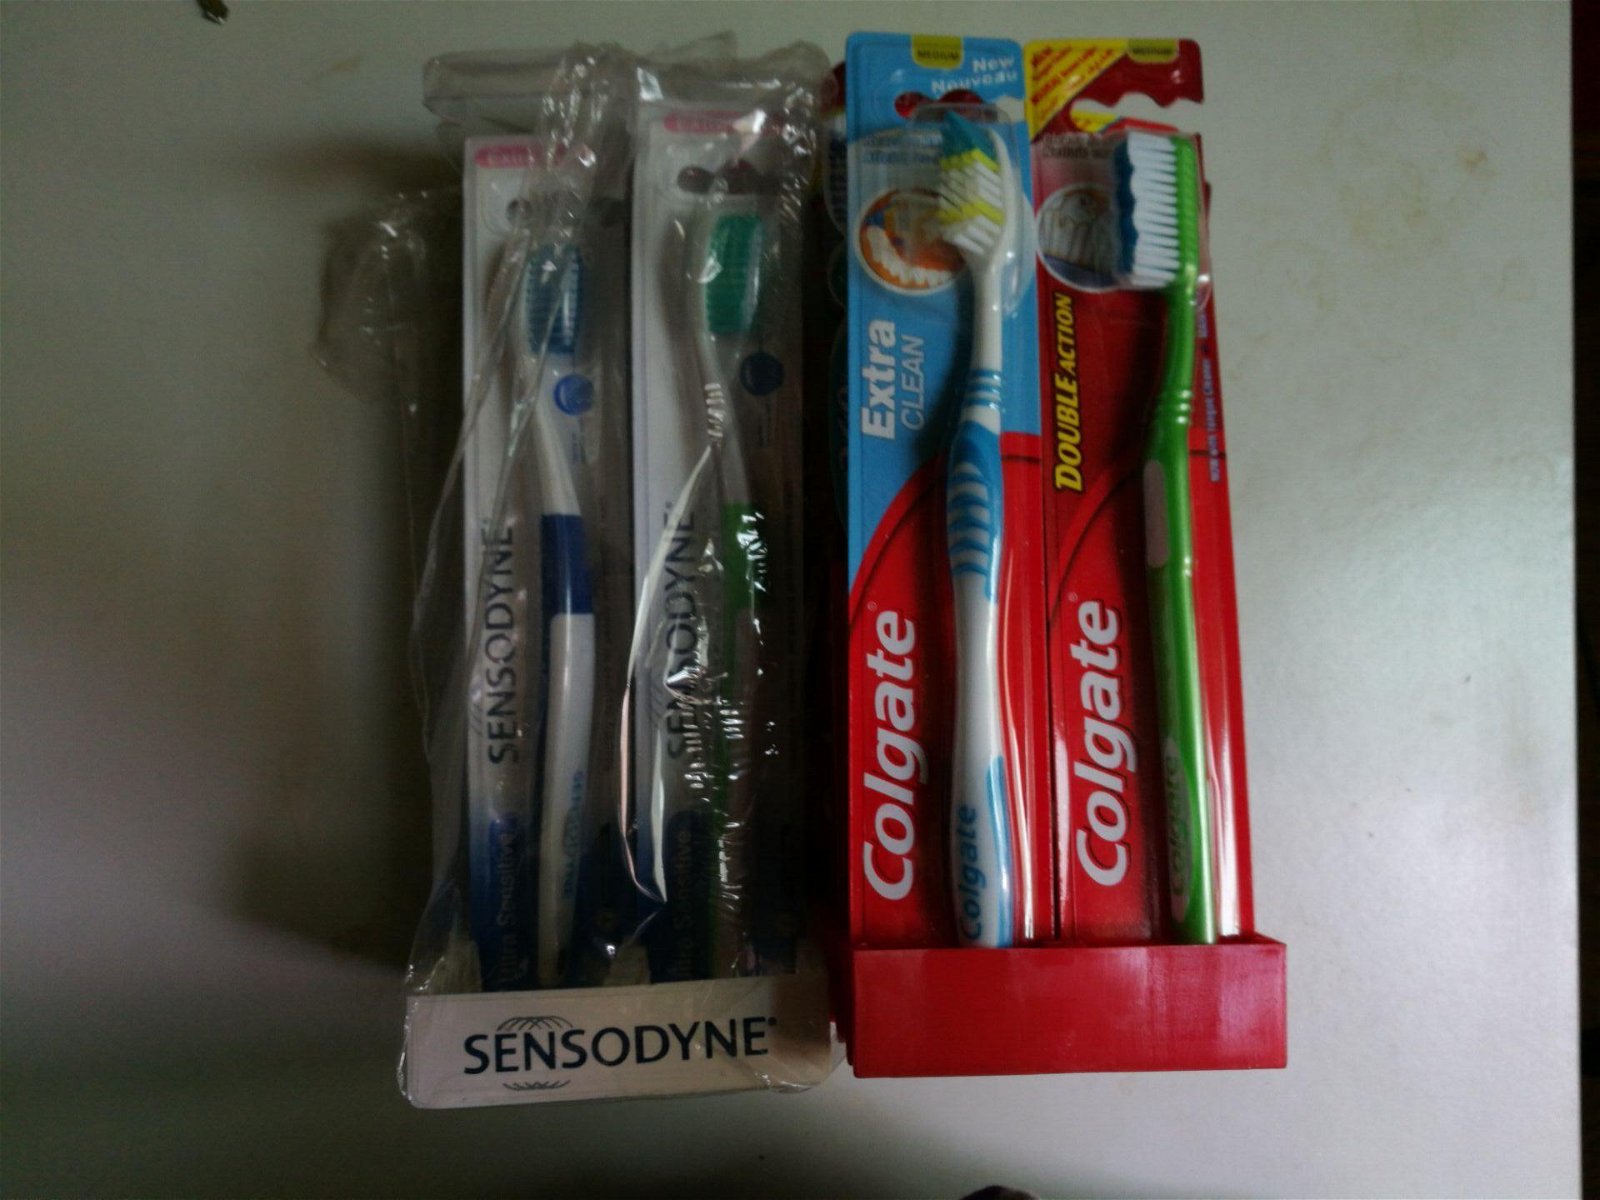 colgate toothbrush,sensodyne toothbrush